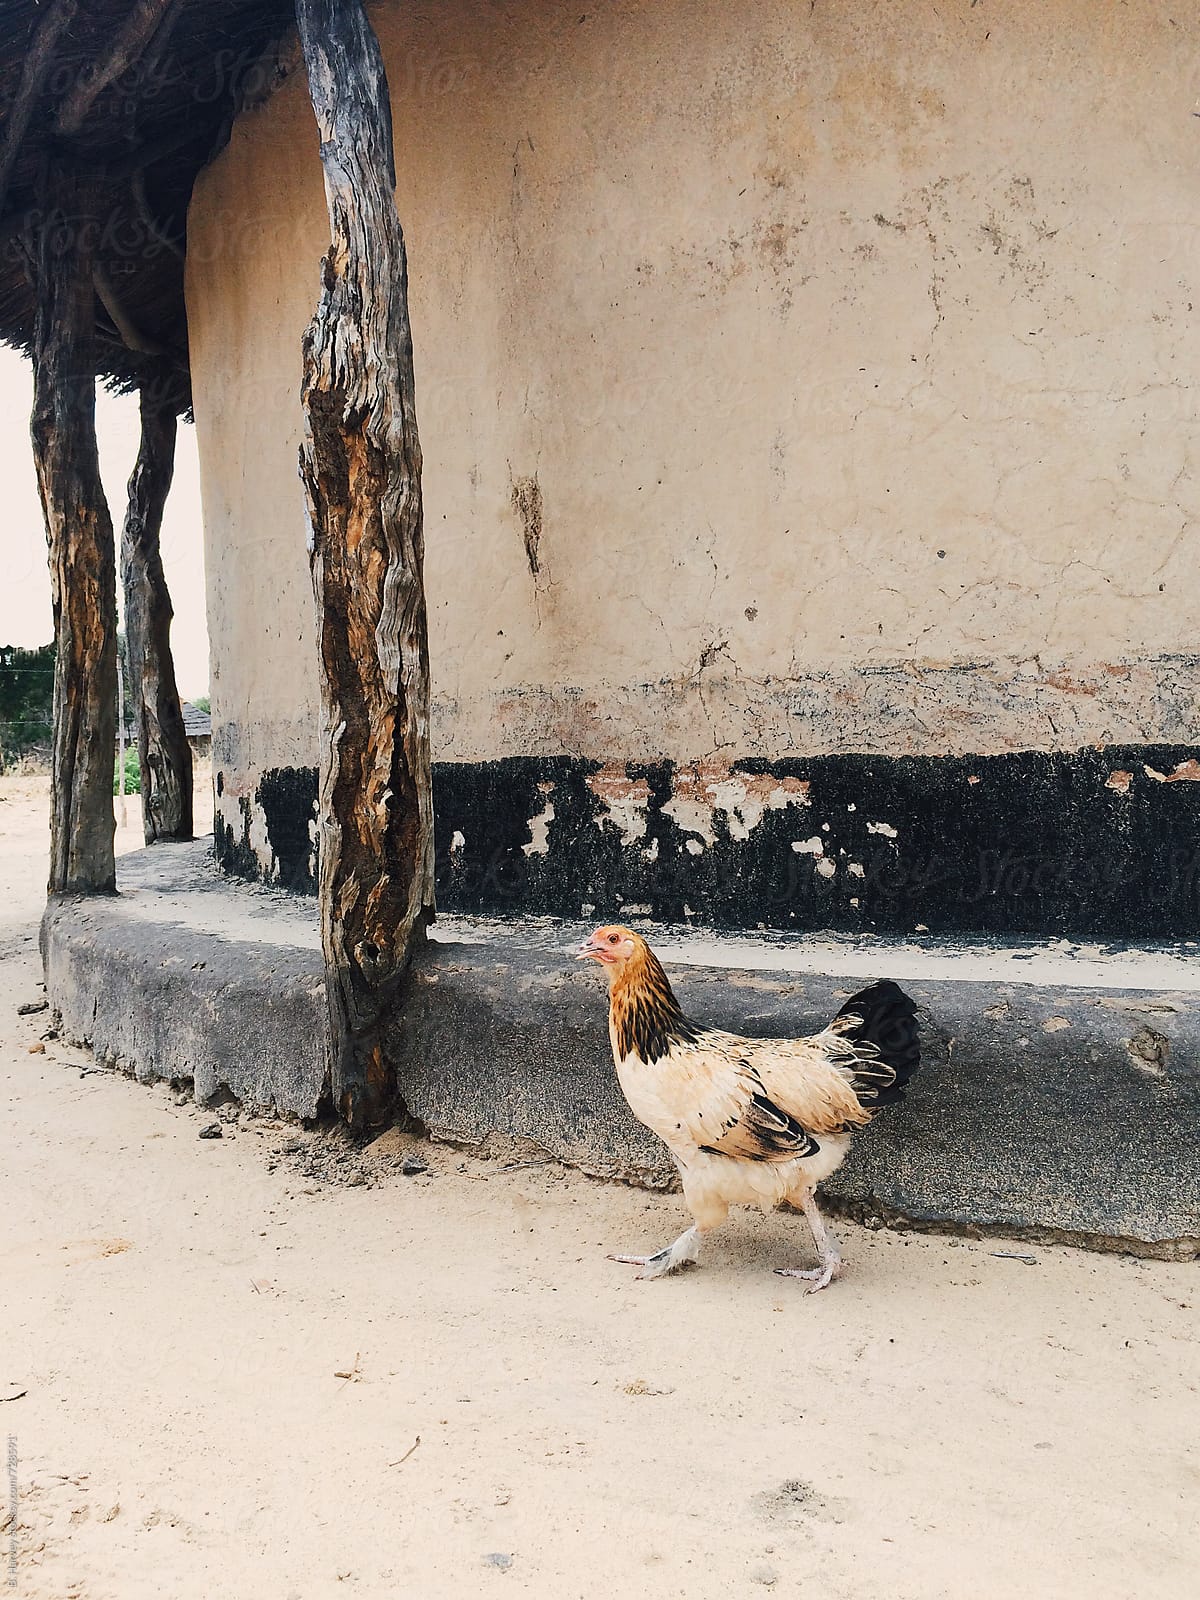 Wild Chicken in Zimbabwe